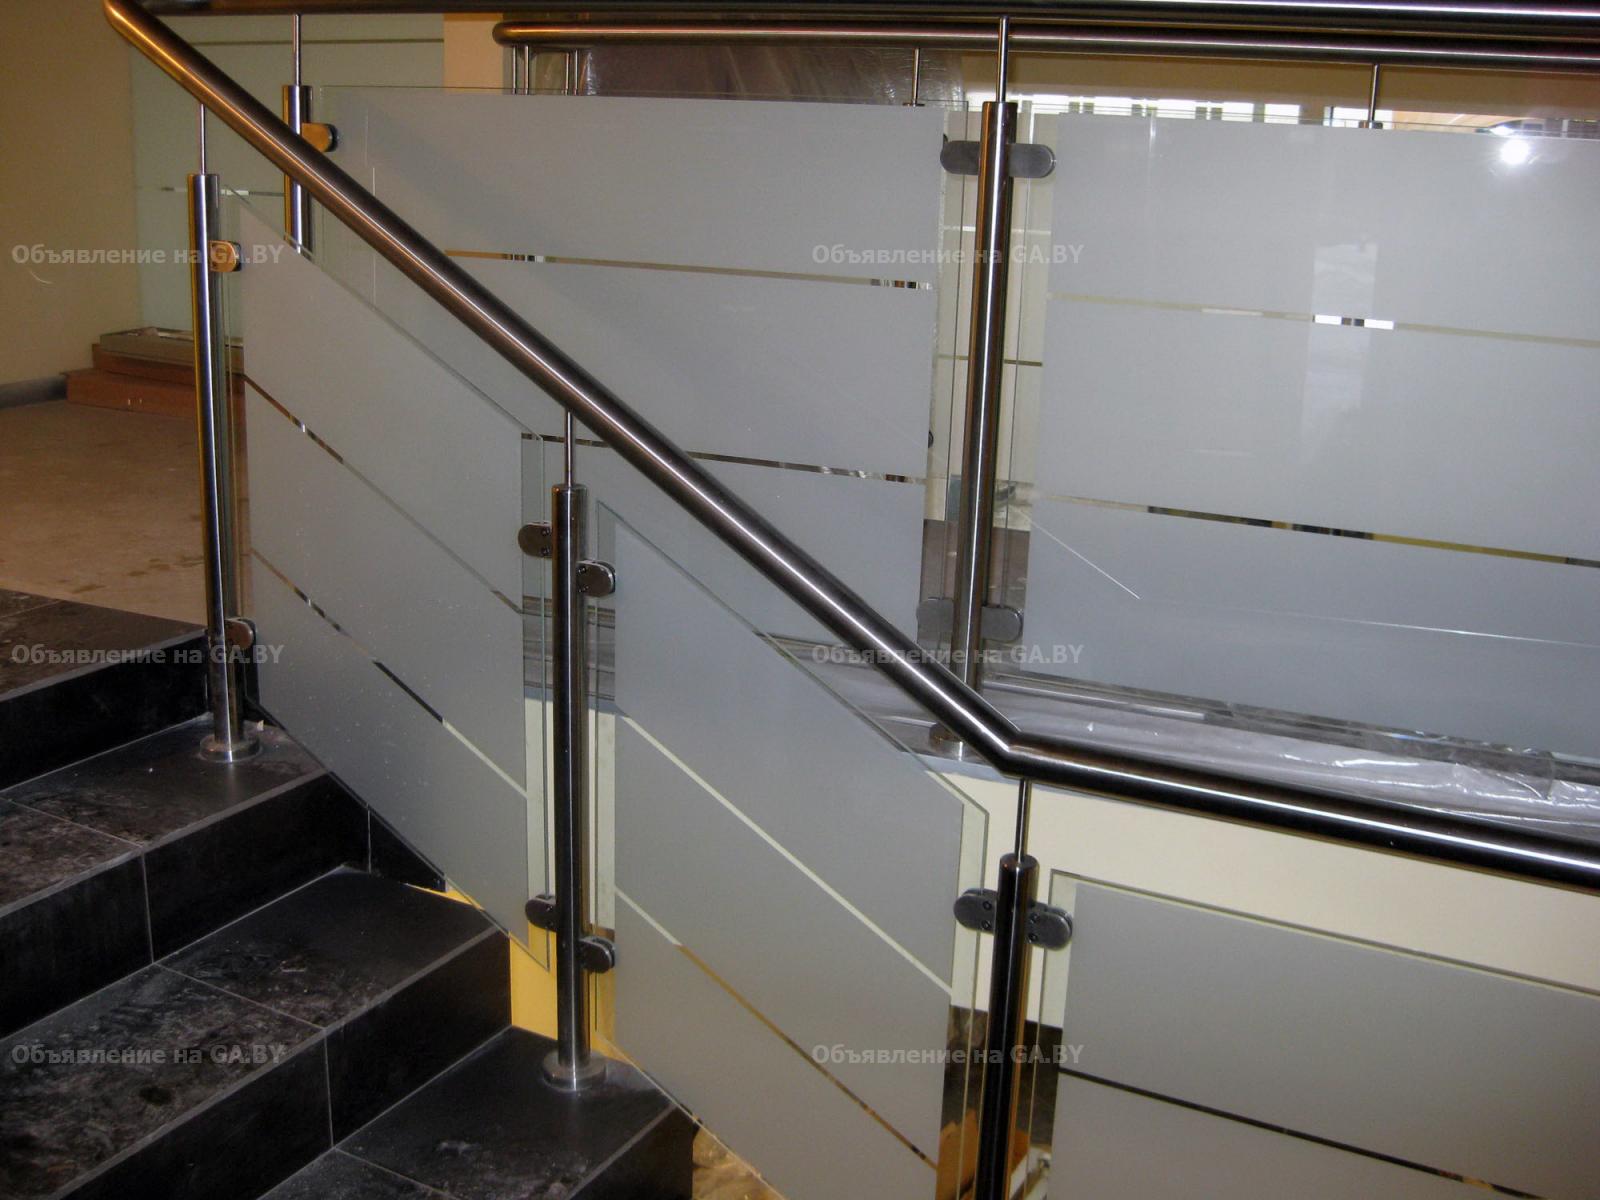 Выполню Ограждения из стекла для лестниц  - GA.BY